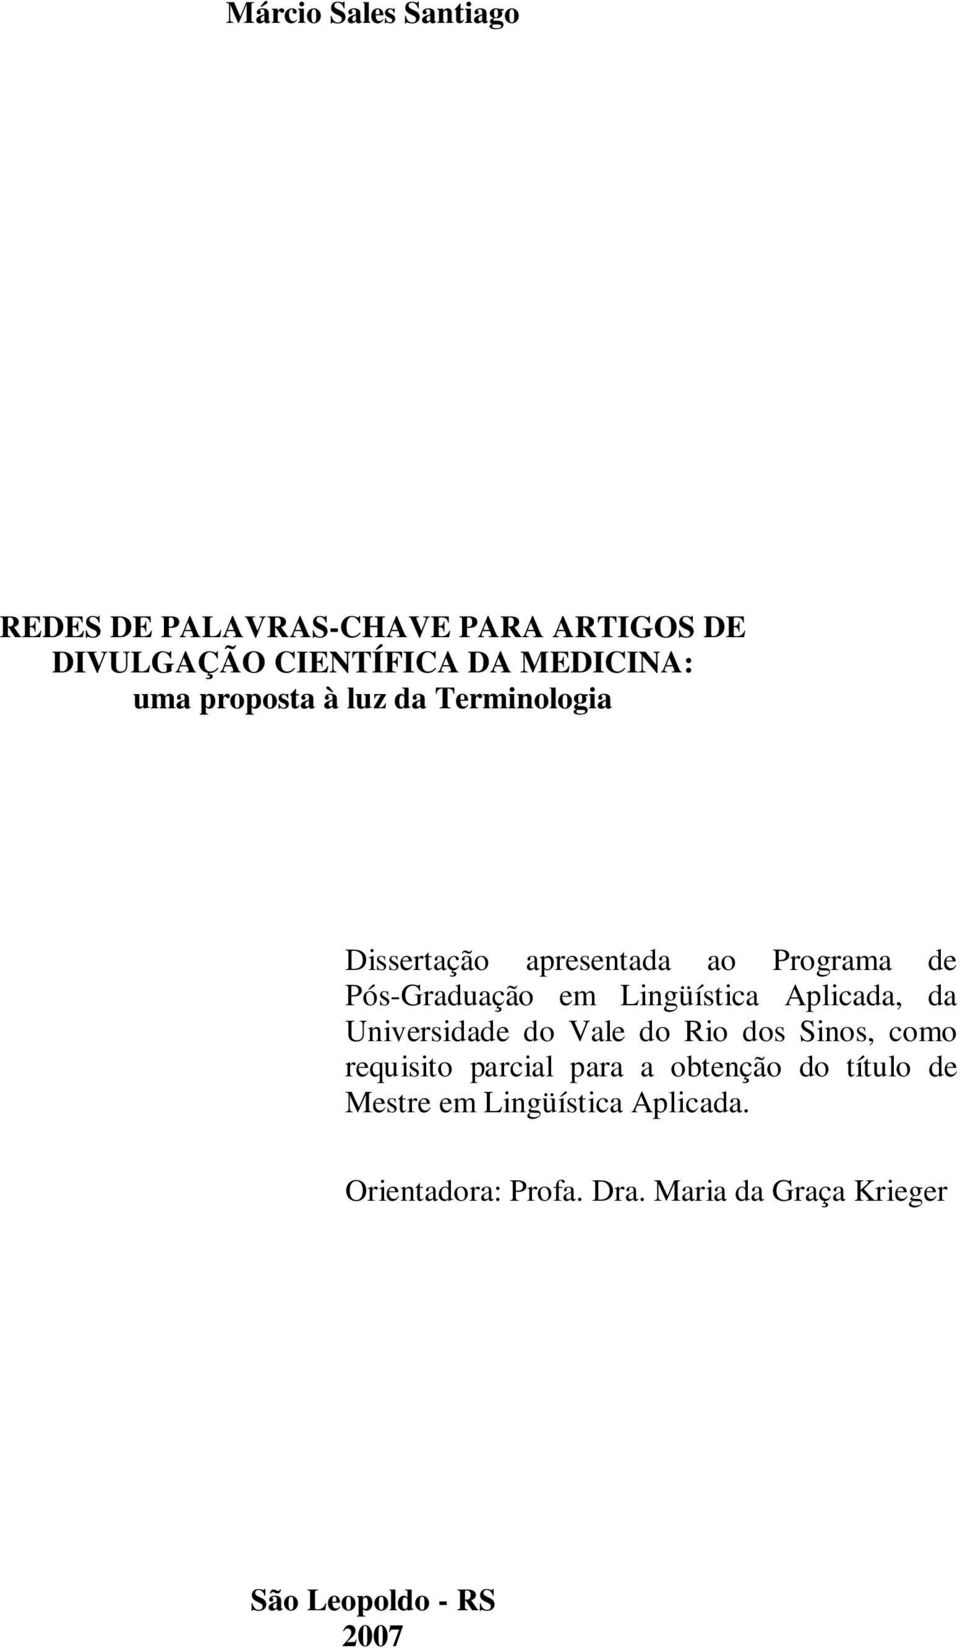 Aplicada, da Universidade do Vale do Rio dos Sinos, como requisito parcial para a obtenção do título